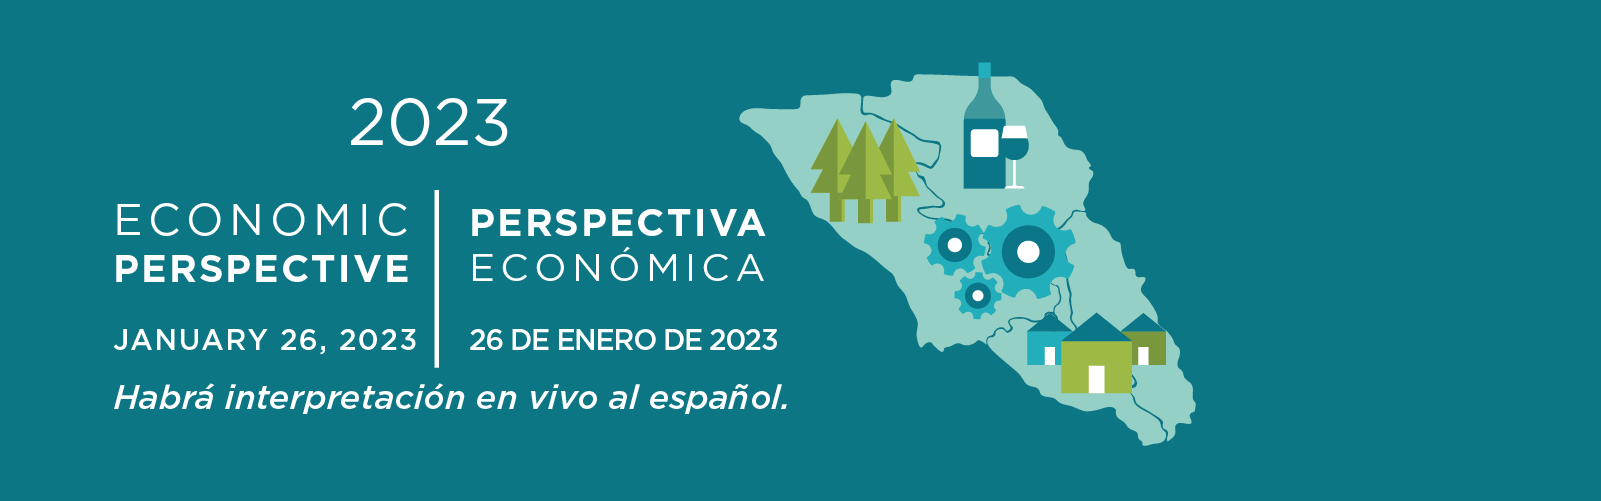 2023 Economic Perspective January 26 2022